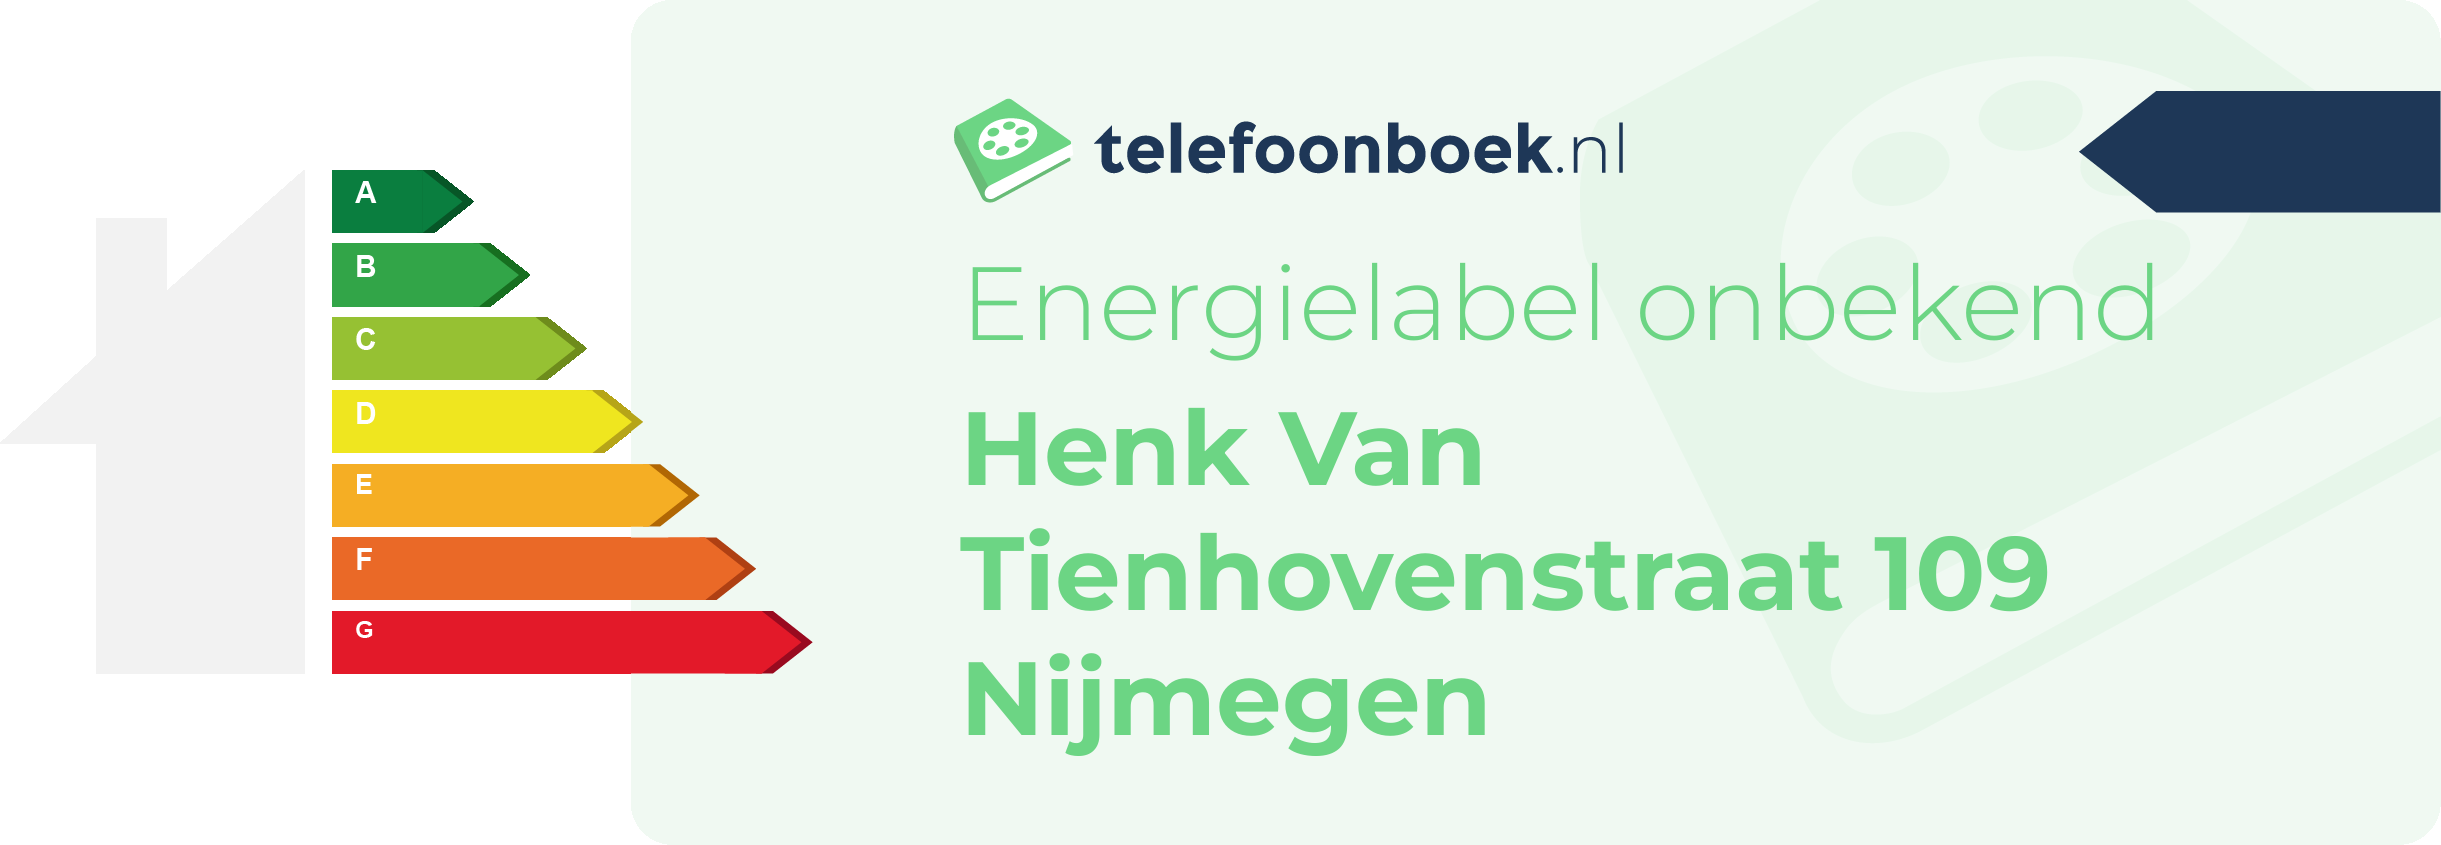 Energielabel Henk Van Tienhovenstraat 109 Nijmegen